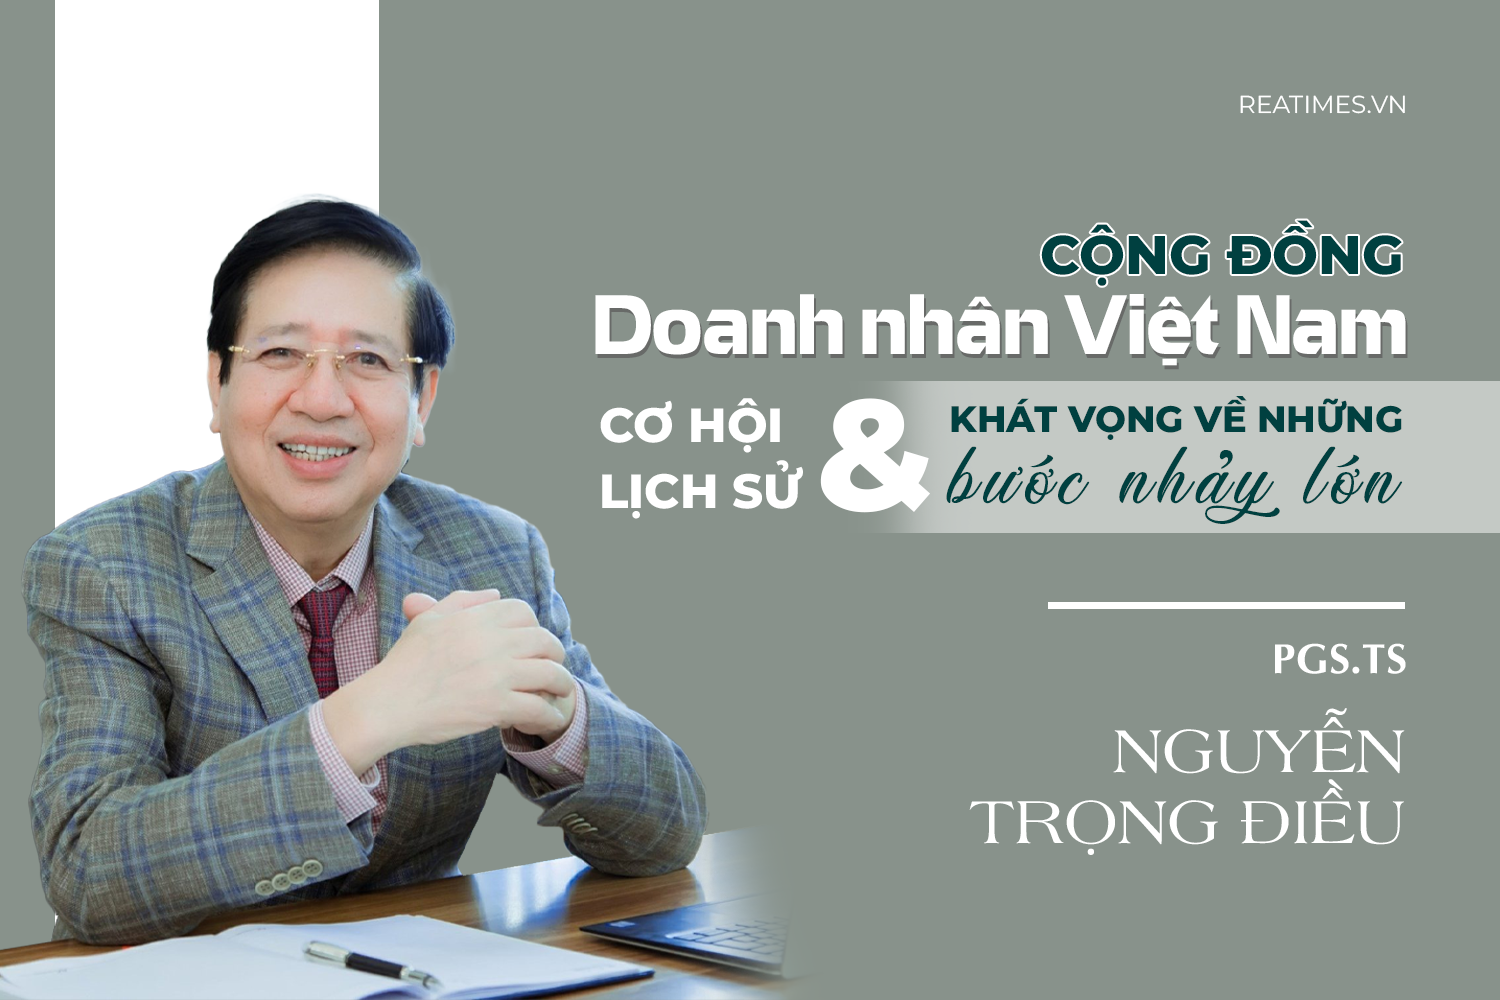  Nghị quyết 41 và cơ hội lịch sử để cộng đồng doanh nhân Việt Nam tạo sức bật mới